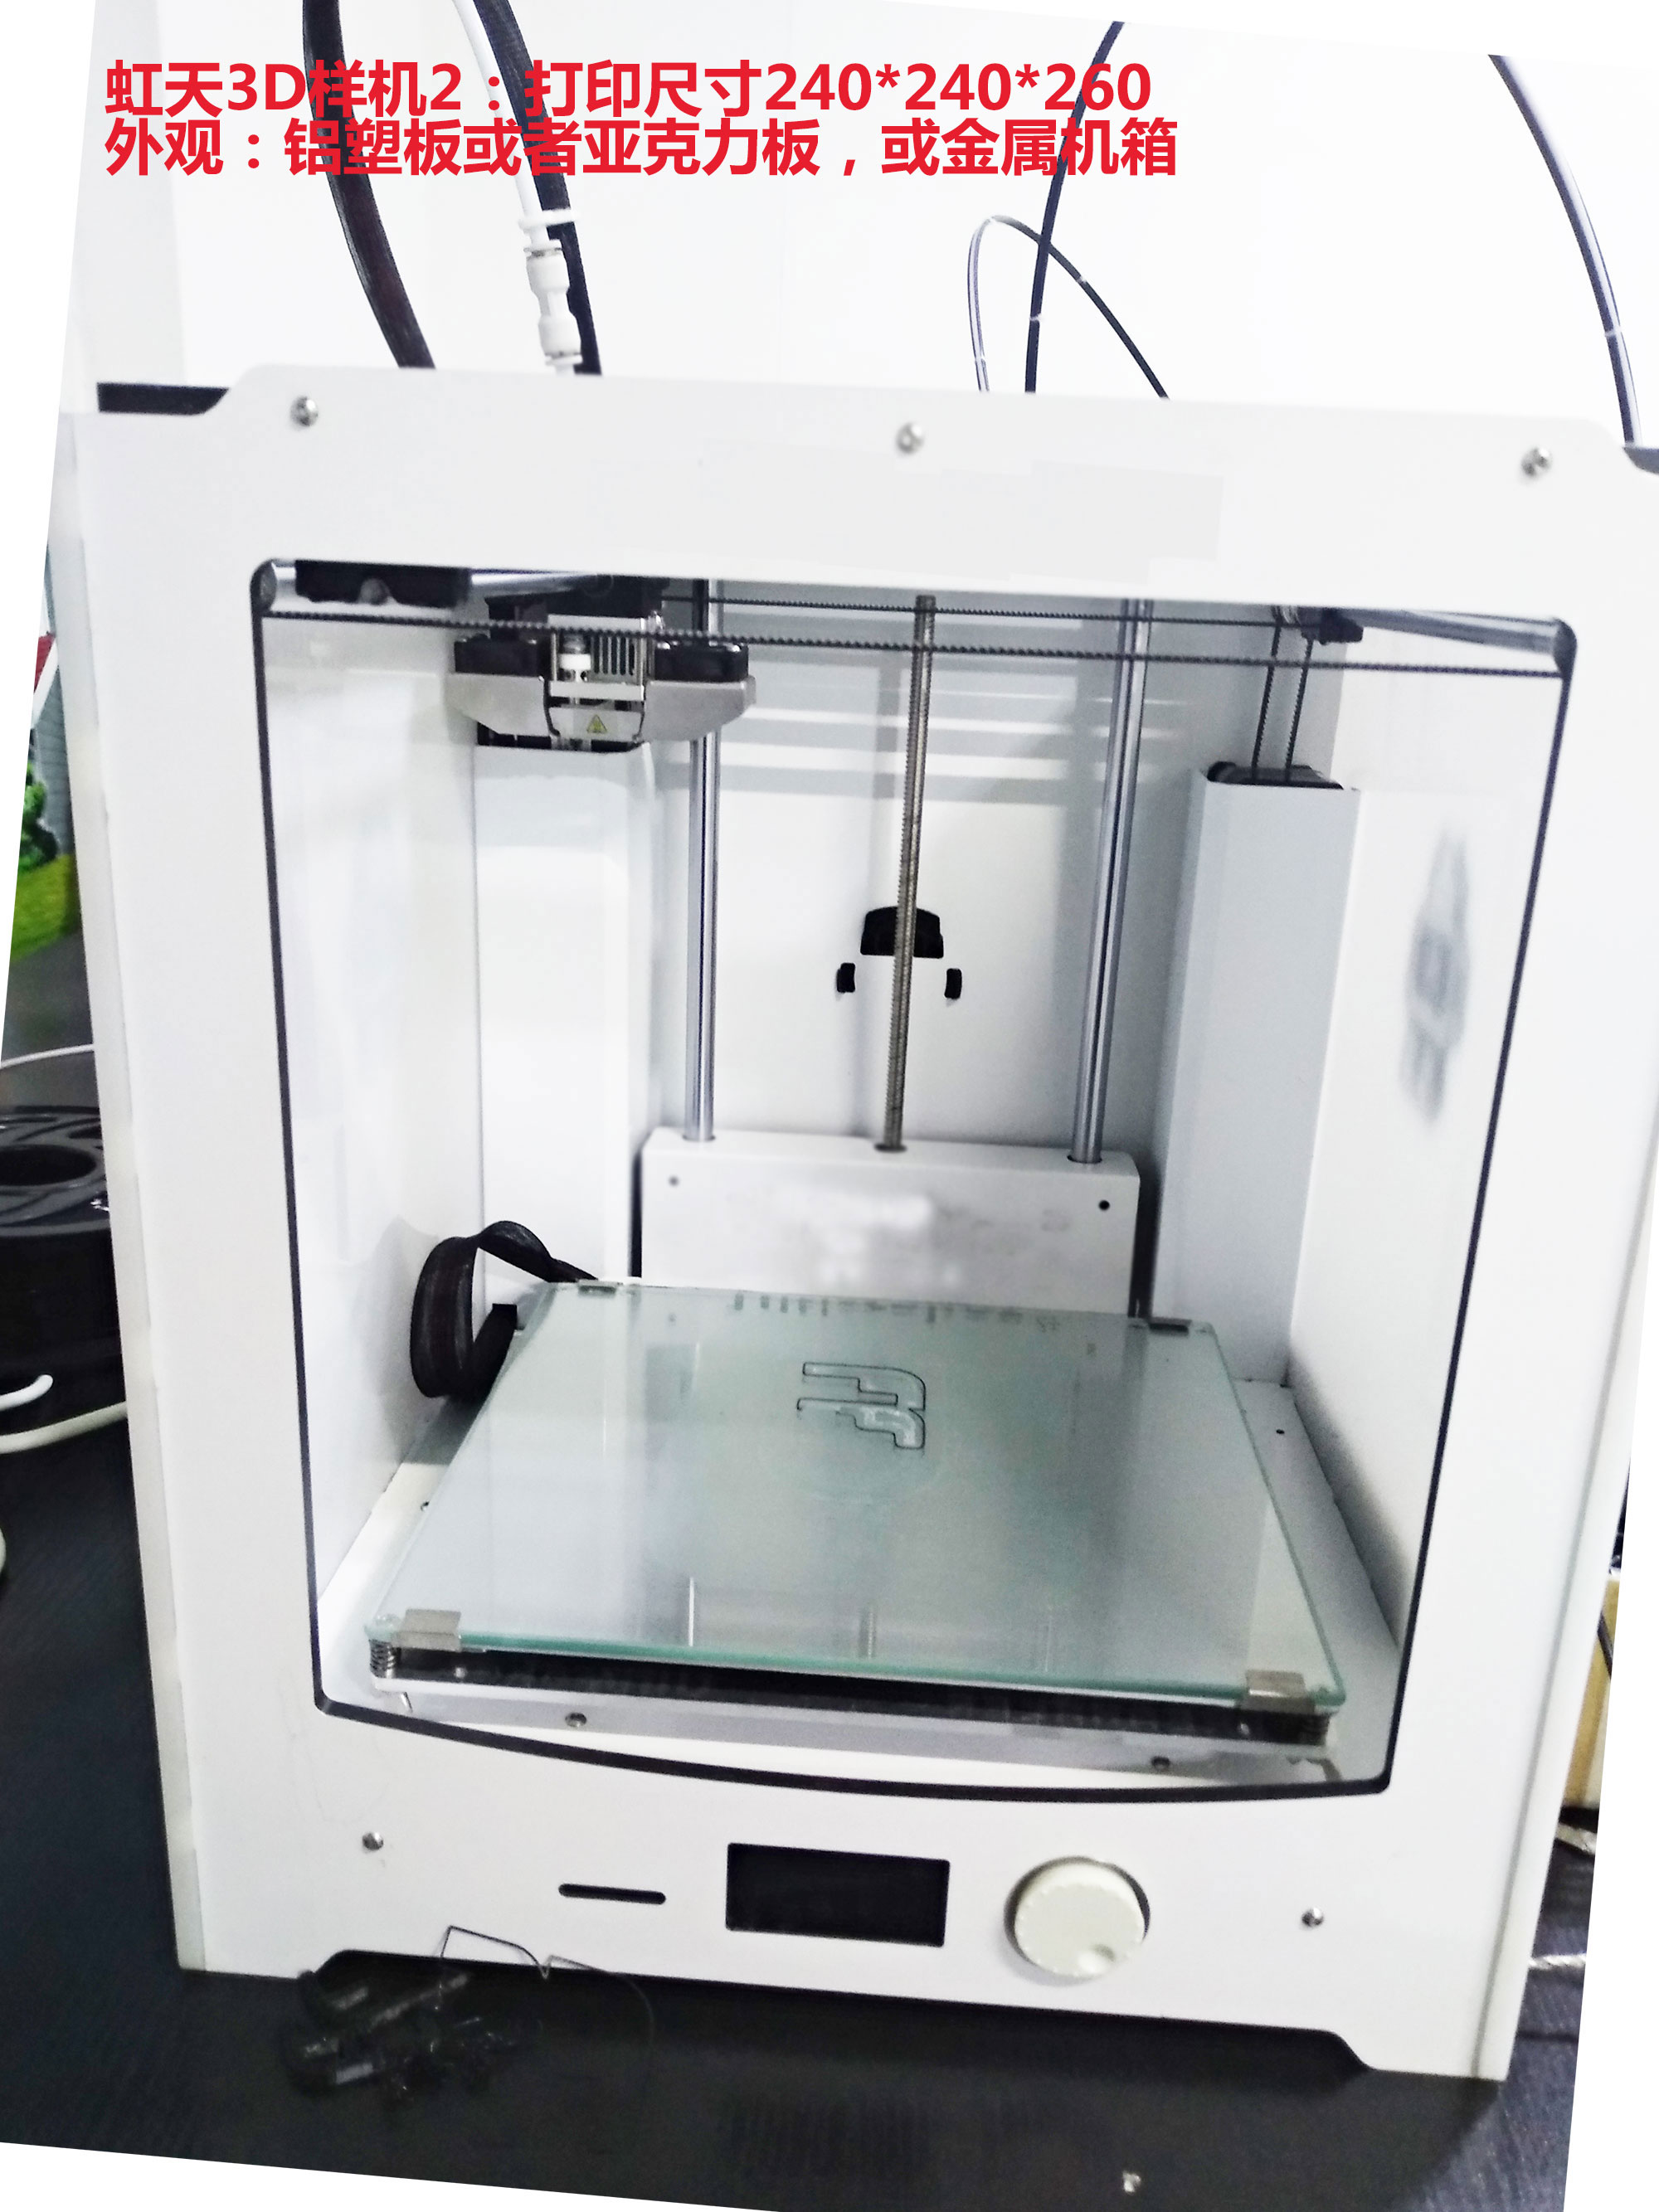 石家庄市河北3D打印机厂家3D打印机 河北3D打印机